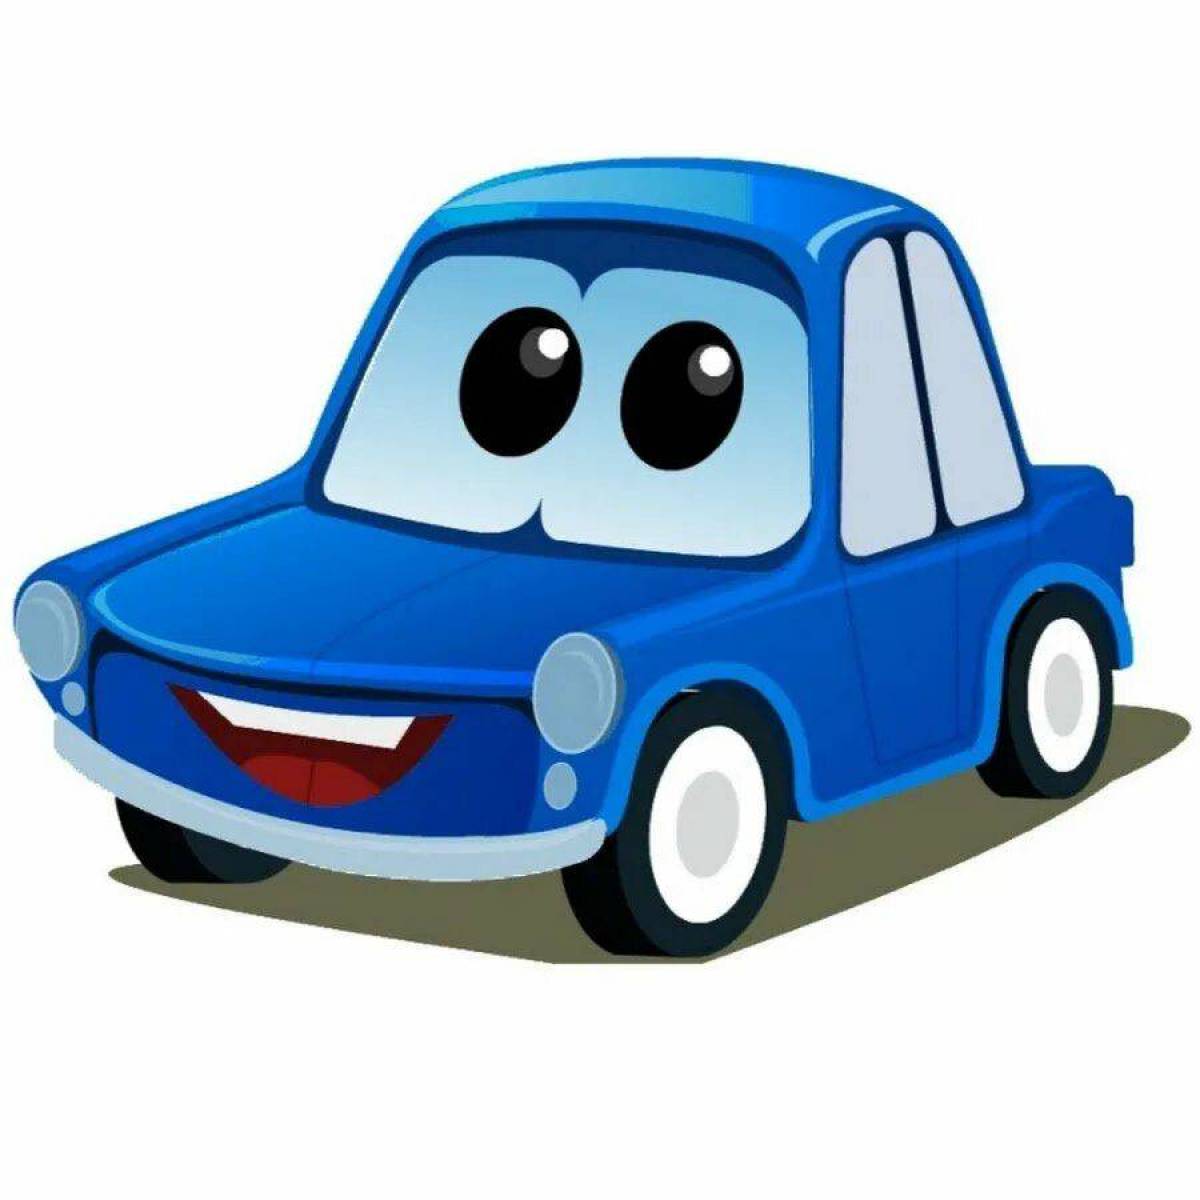 Синяя машинка для детей. Автомобиль мультяшный. Синяя машина для детей. Машинки с глазками. Машина мультяшка.